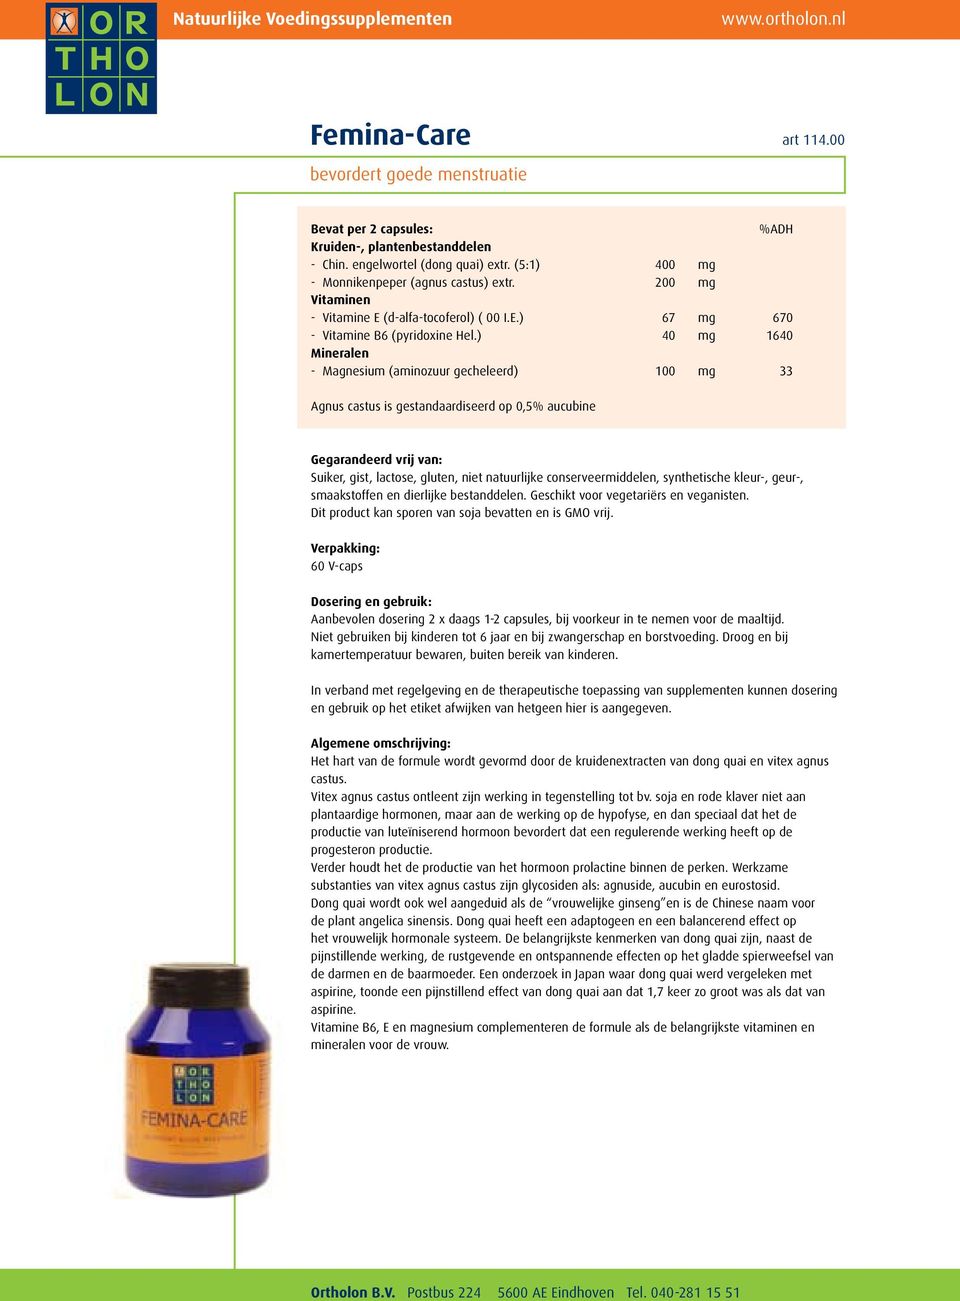 ) 40 mg 1640 Mineralen - Magnesium (aminozuur gecheleerd) 100 mg 33 Agnus castus is gestandaardiseerd op 0,5% aucubine Dit product kan sporen van soja bevatten en is GMO vrij.